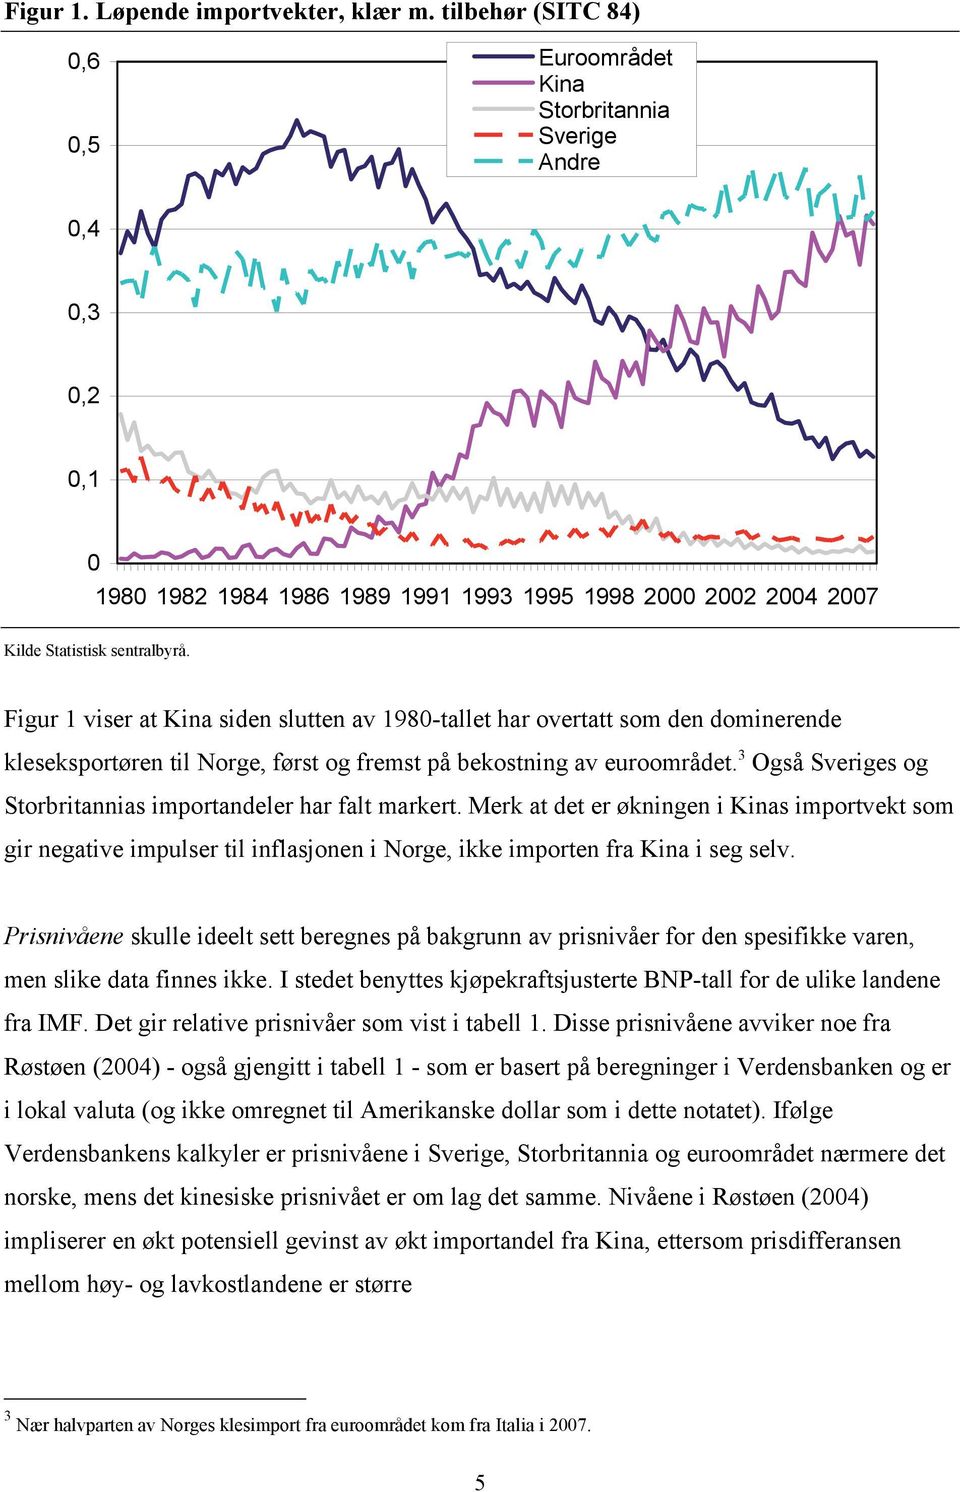 Figur 1 viser at Kina siden slutten av 1980-tallet har overtatt som den dominerende kleseksportøren til Norge, først og fremst på bekostning av euroområdet.